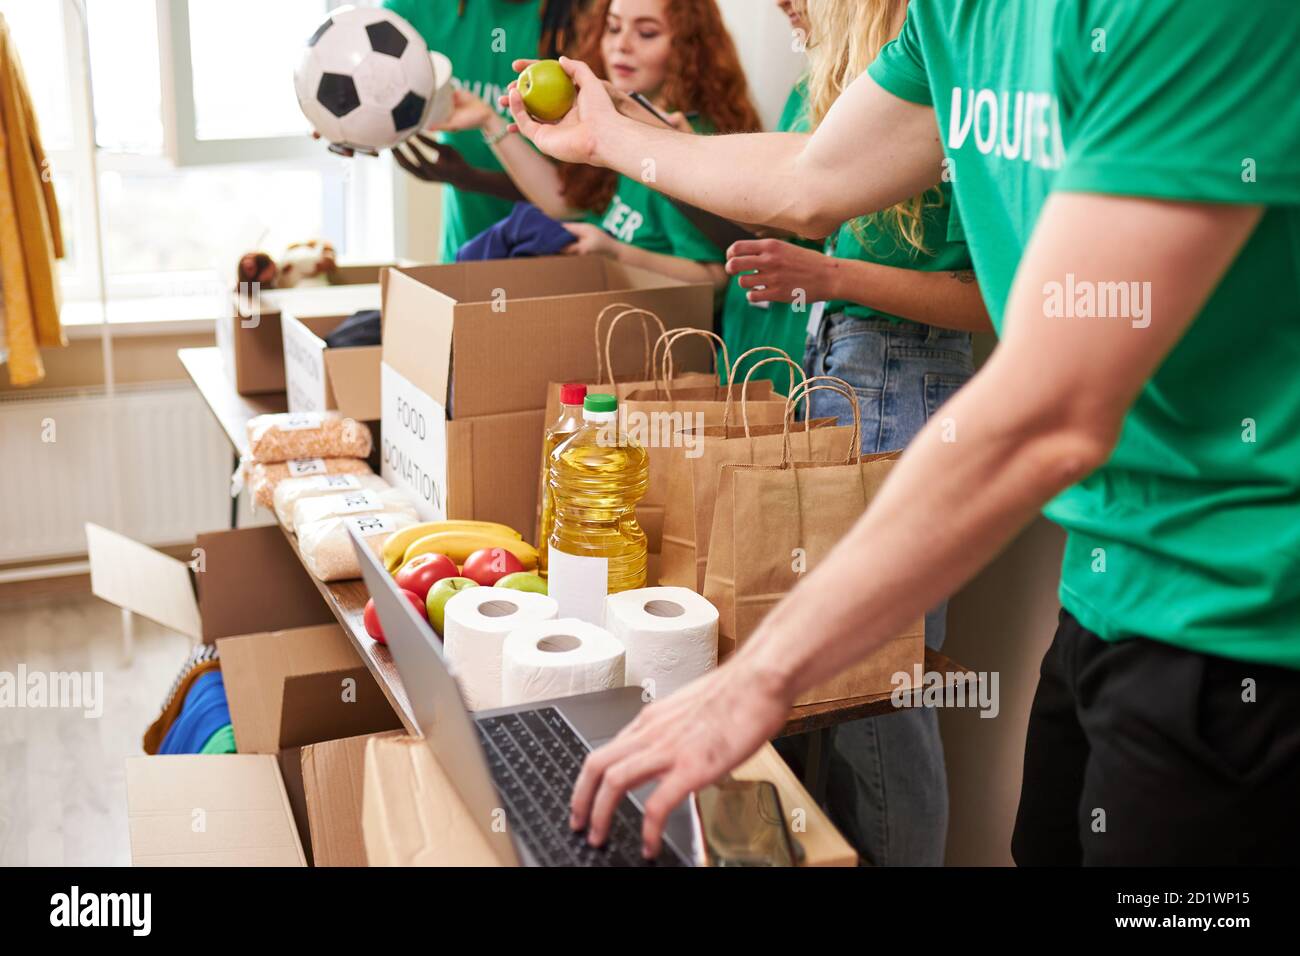 Gruppe von verschiedenen Menschen sortieren durch gespendete Lebensmittel Gegenstände während Freiwilligenarbeit in der Gemeinschaft, verwenden sie Kartons für das Sammeln von Spenden Stockfoto